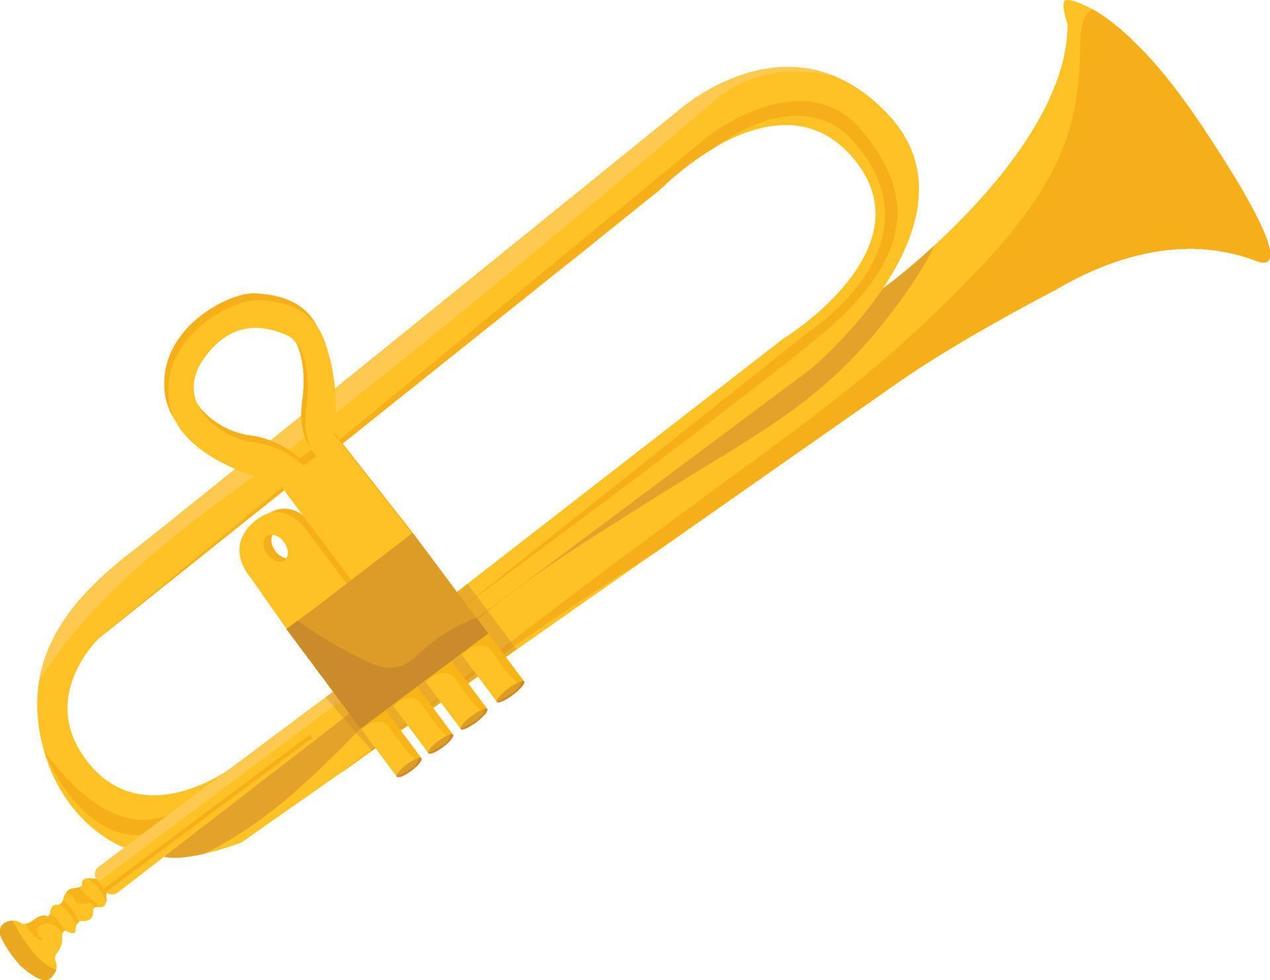 gyllene trumpet ,illustration, vektor på vit bakgrund.